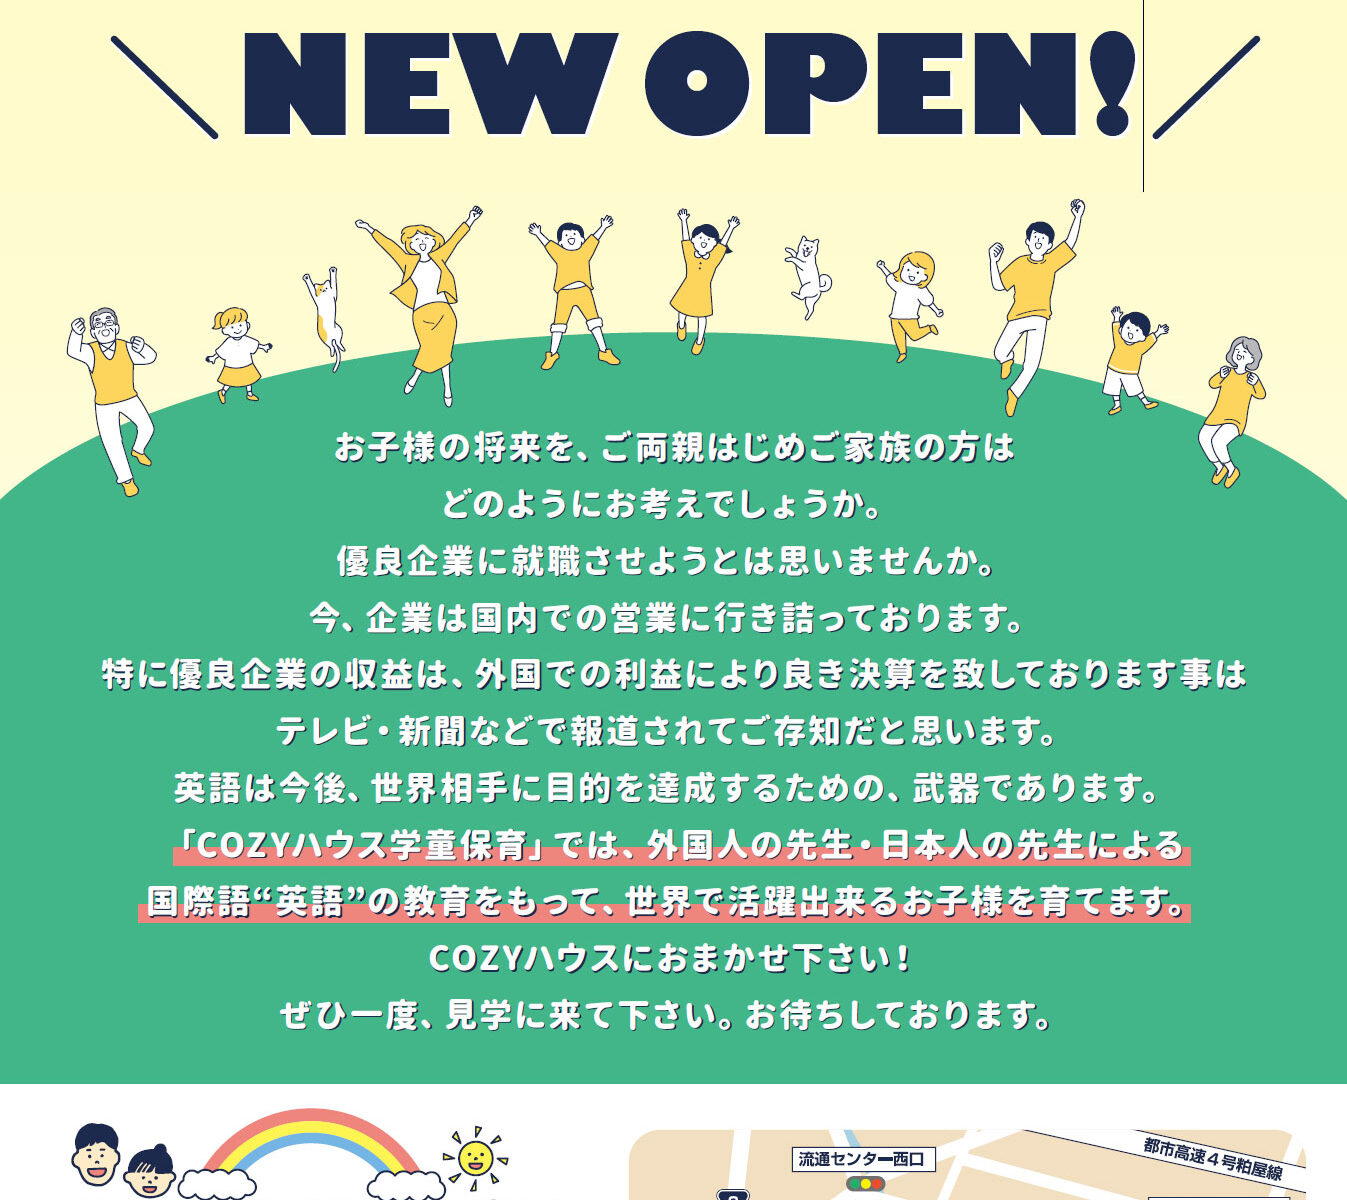 日本人と外国人の先生による英会話教室「COZY HOUSE」小学生学童保育児募集！